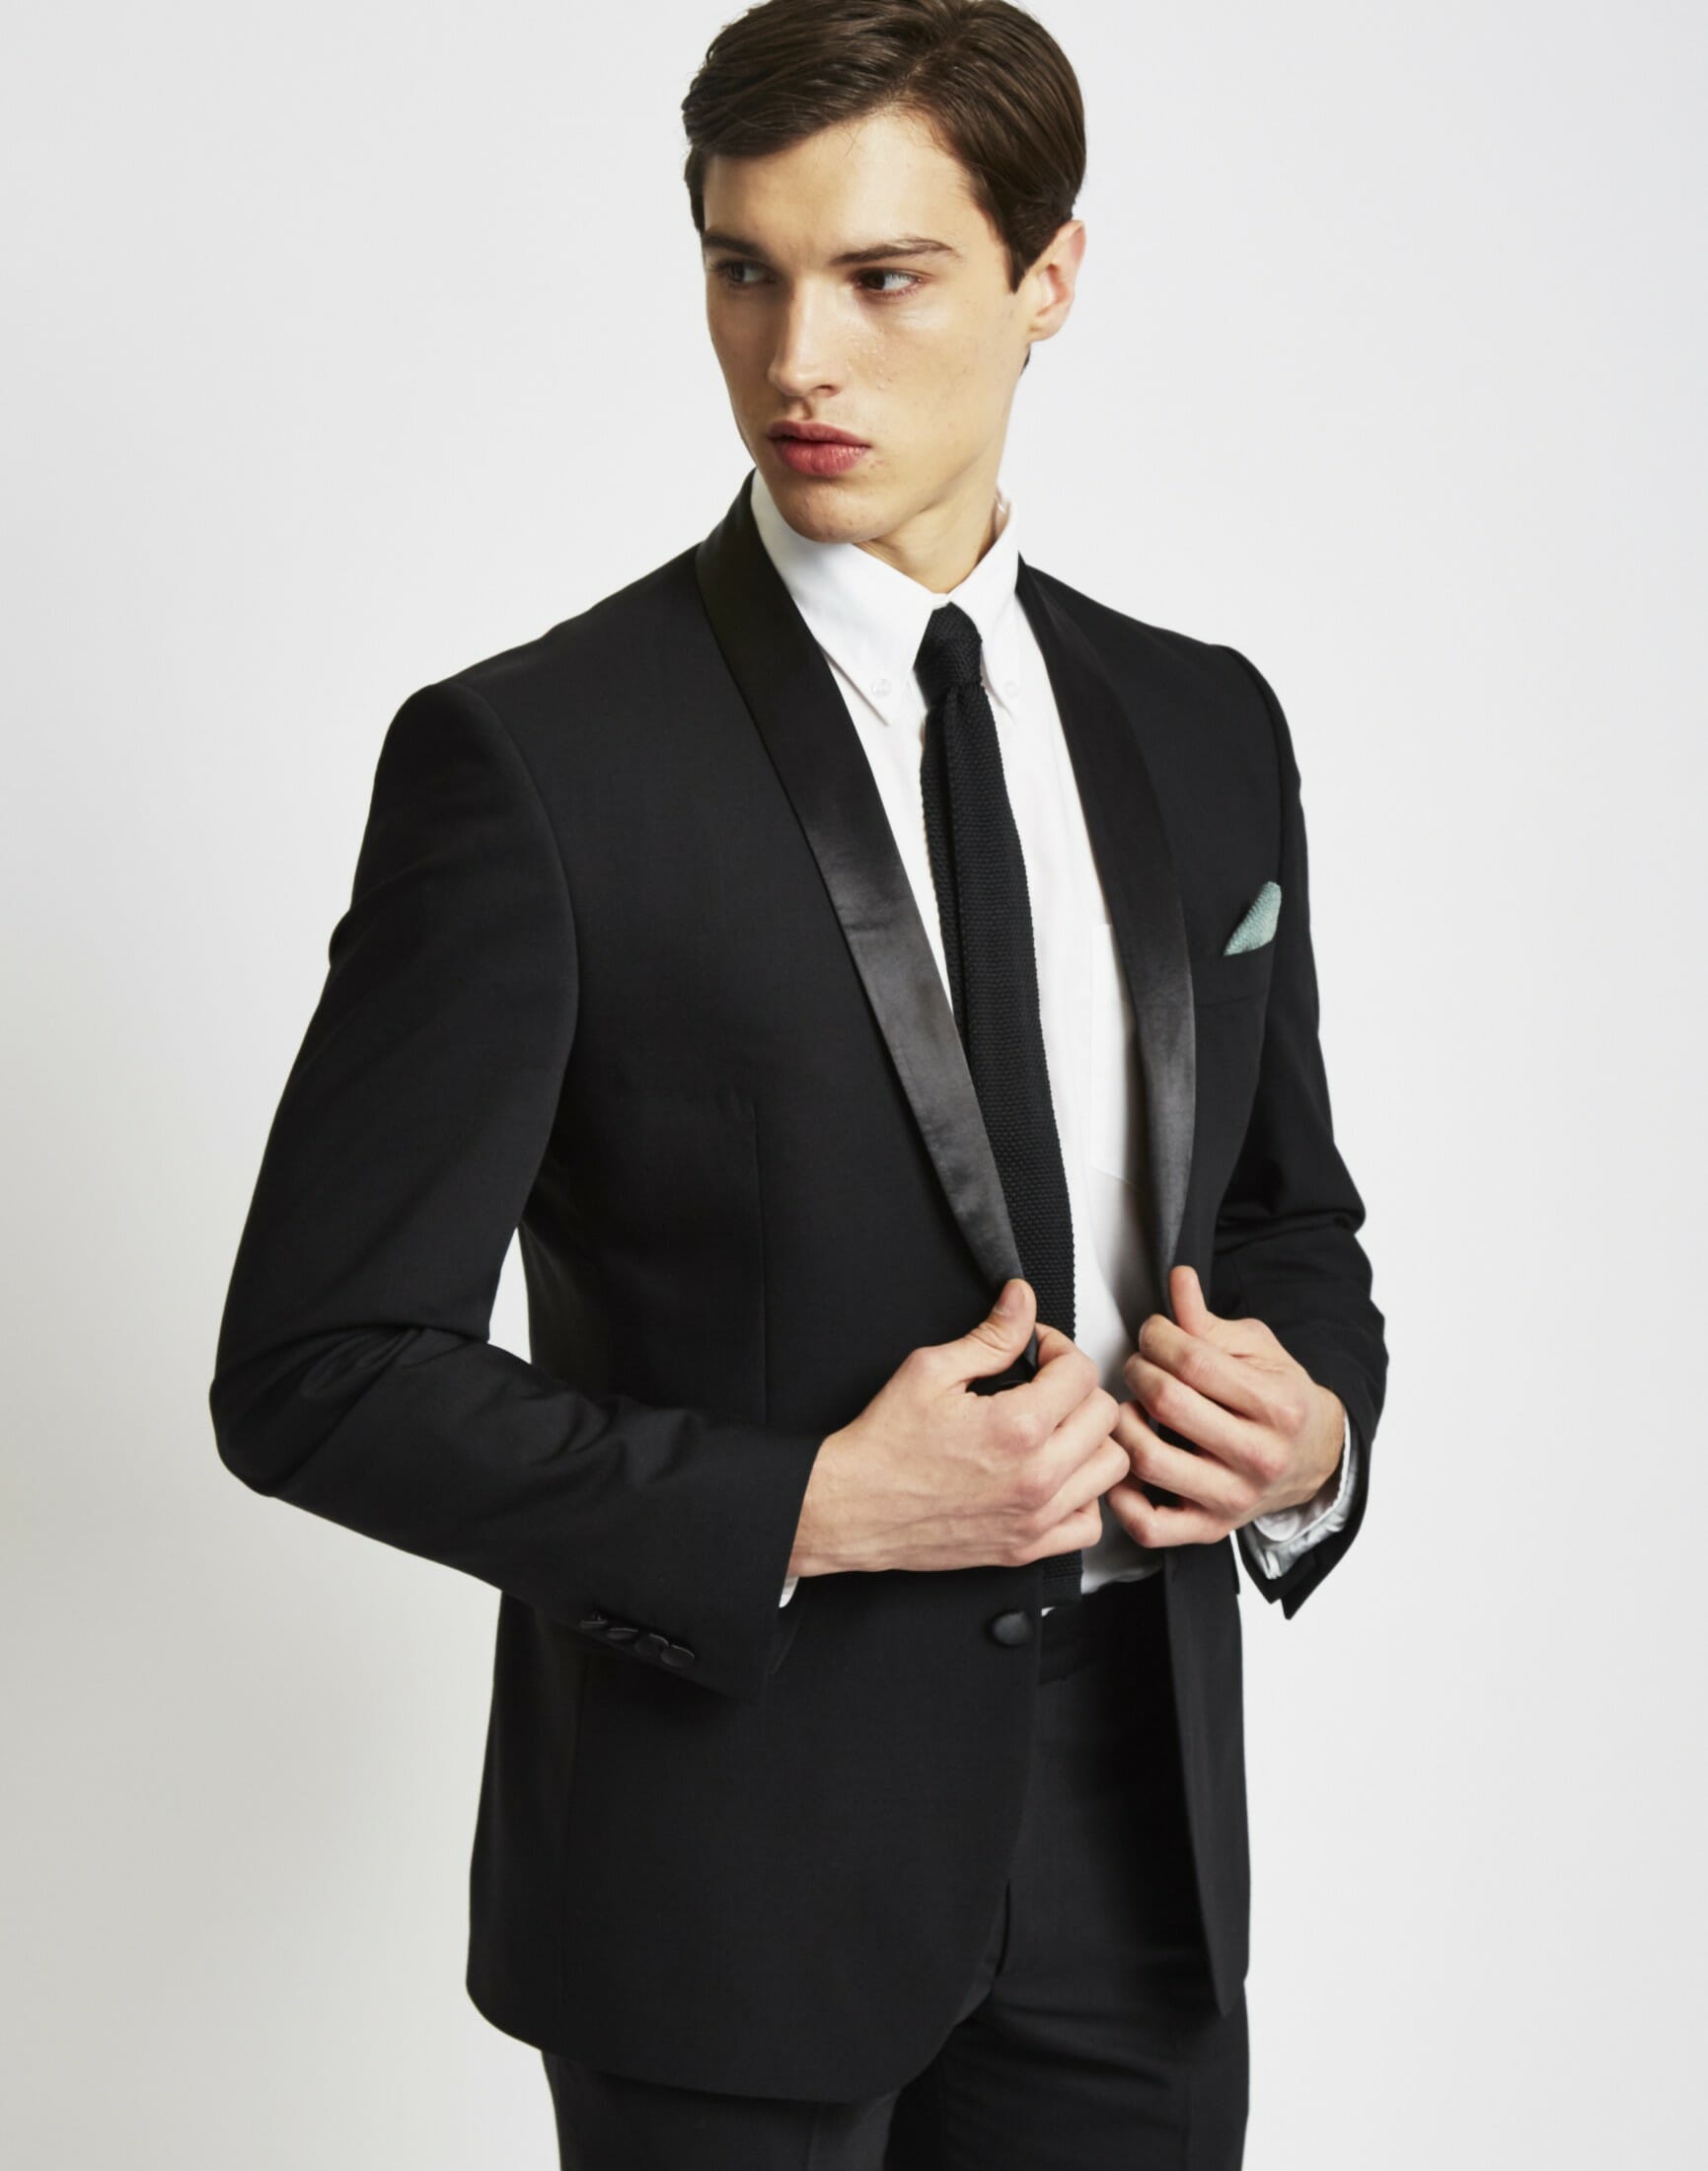 black tie welcome dress code